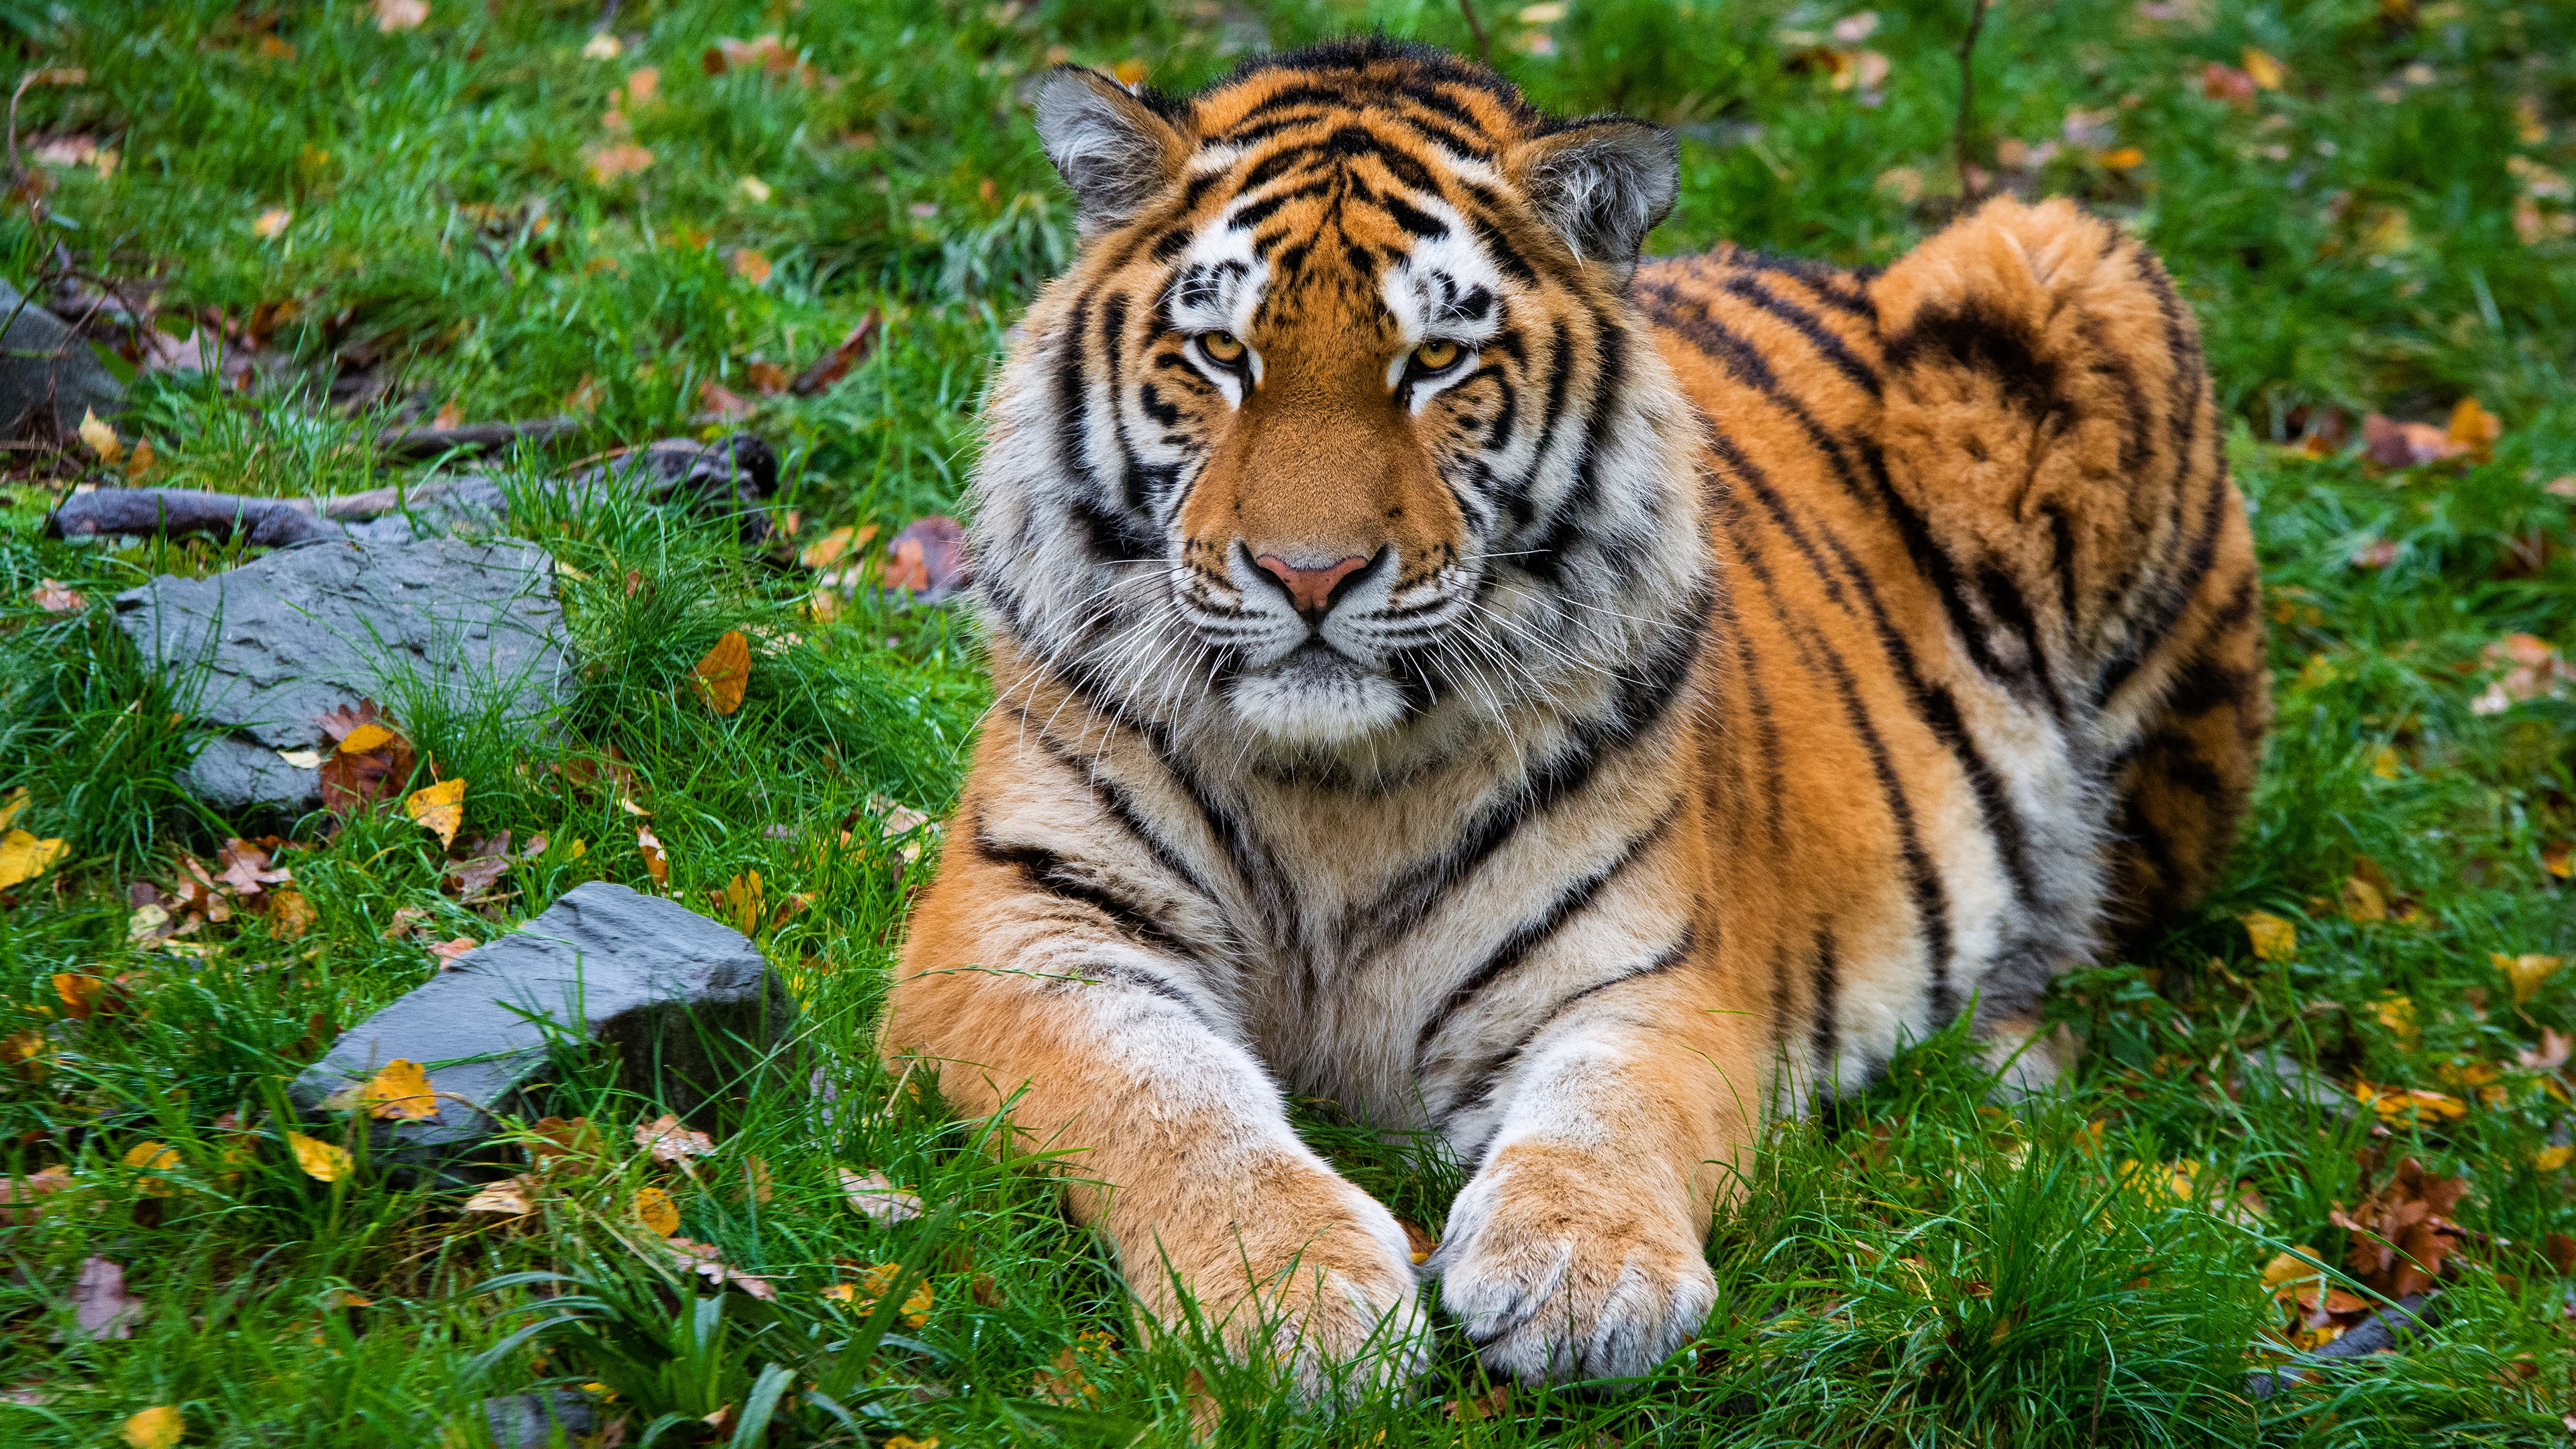 Papeis de parede Tigre Fauve Ver Focinho 3D Gráfica Animalia baixar imagens